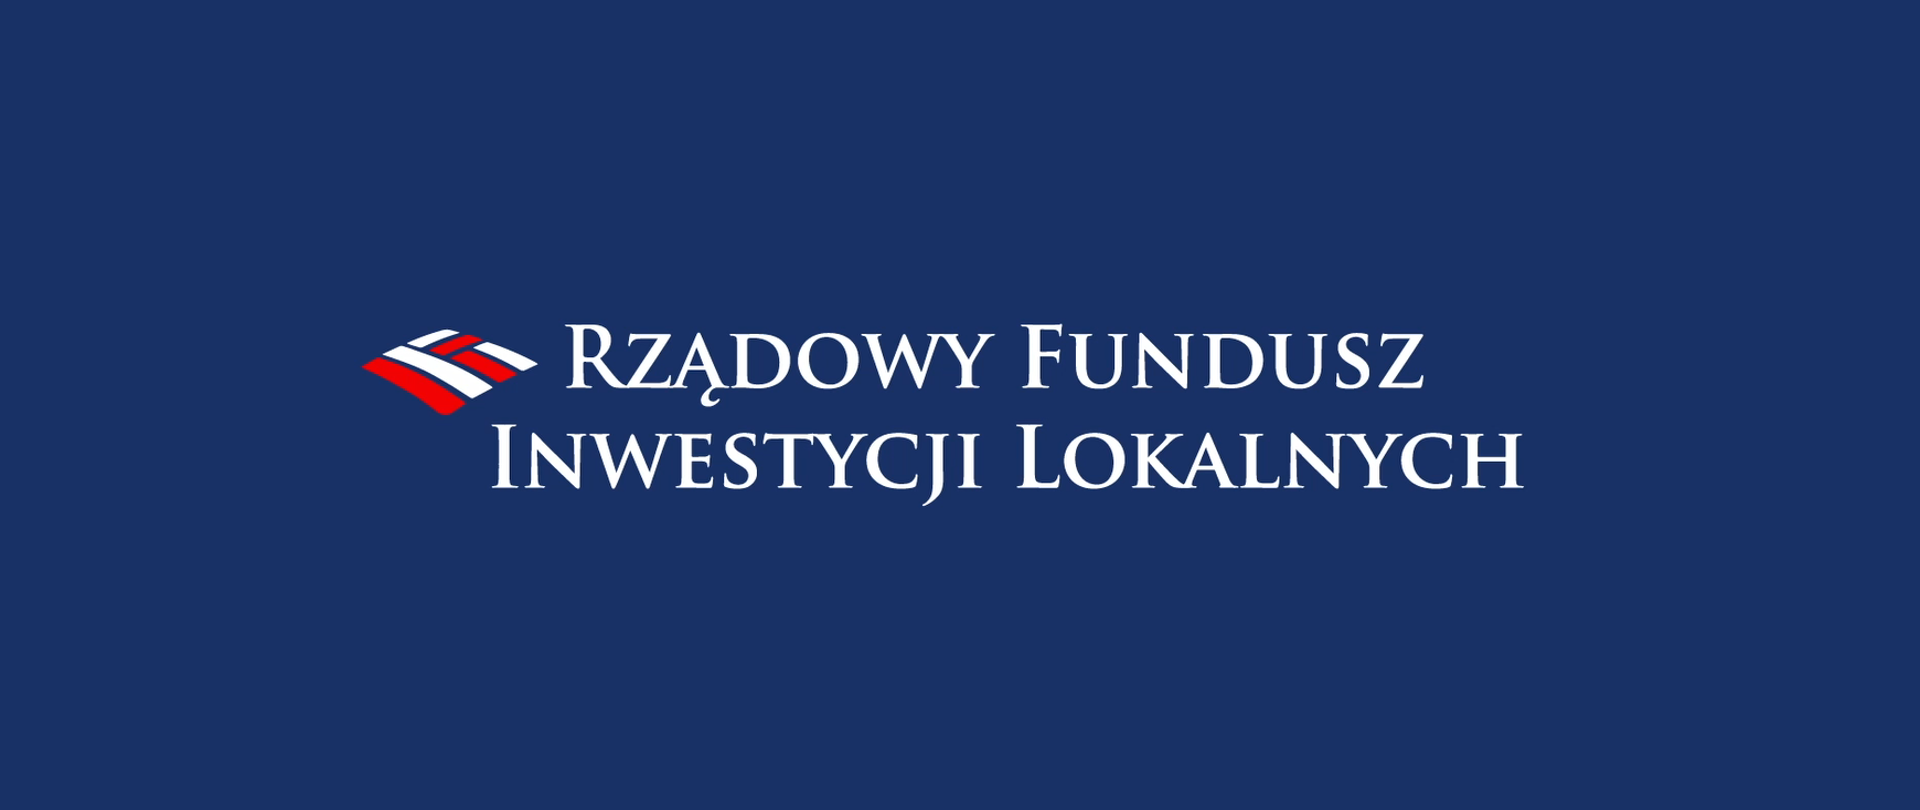 Obraz przedstawia napis "Rządowy Fundusz Inwestycji Lokalnych", wykonany białymi literami na granatowym tle. Tuż obok napisu niewielkie logo składające się na trzy biało-czerwone flagi. 